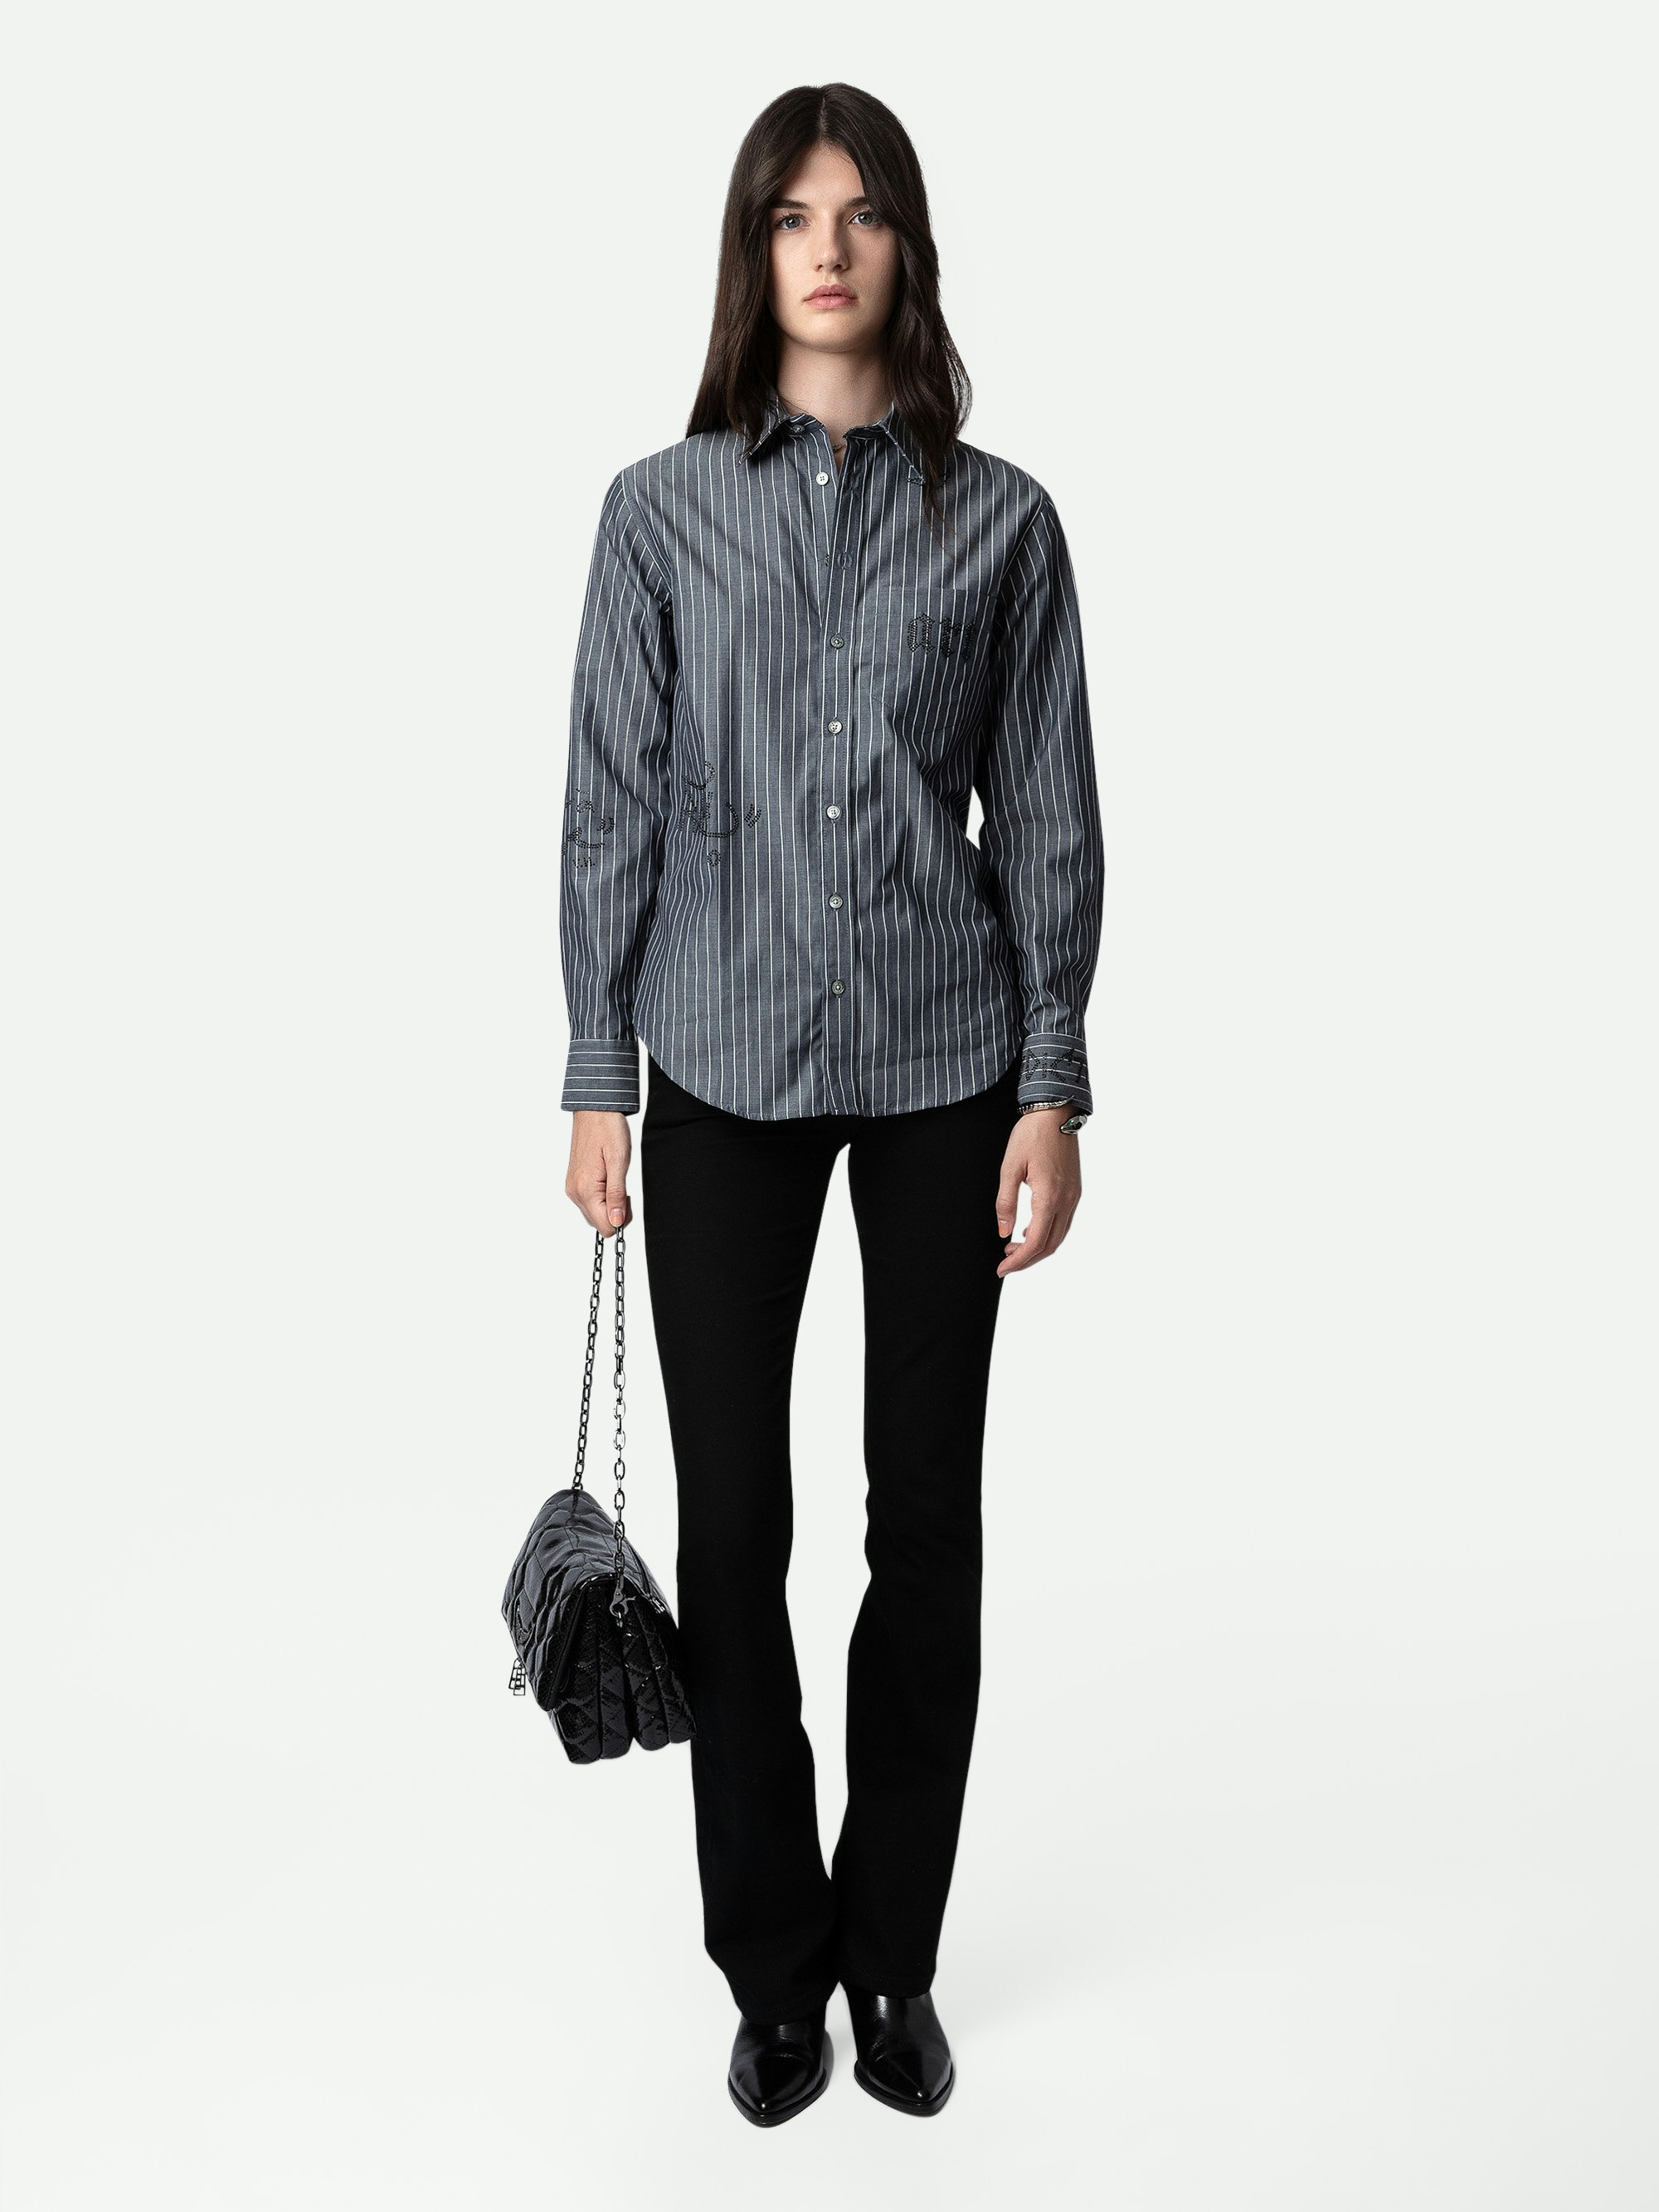 Camicia Taskiz Strass - Camicia da donna in cotone grigio decorata con manifesto Zadig&Voltaire in strass.